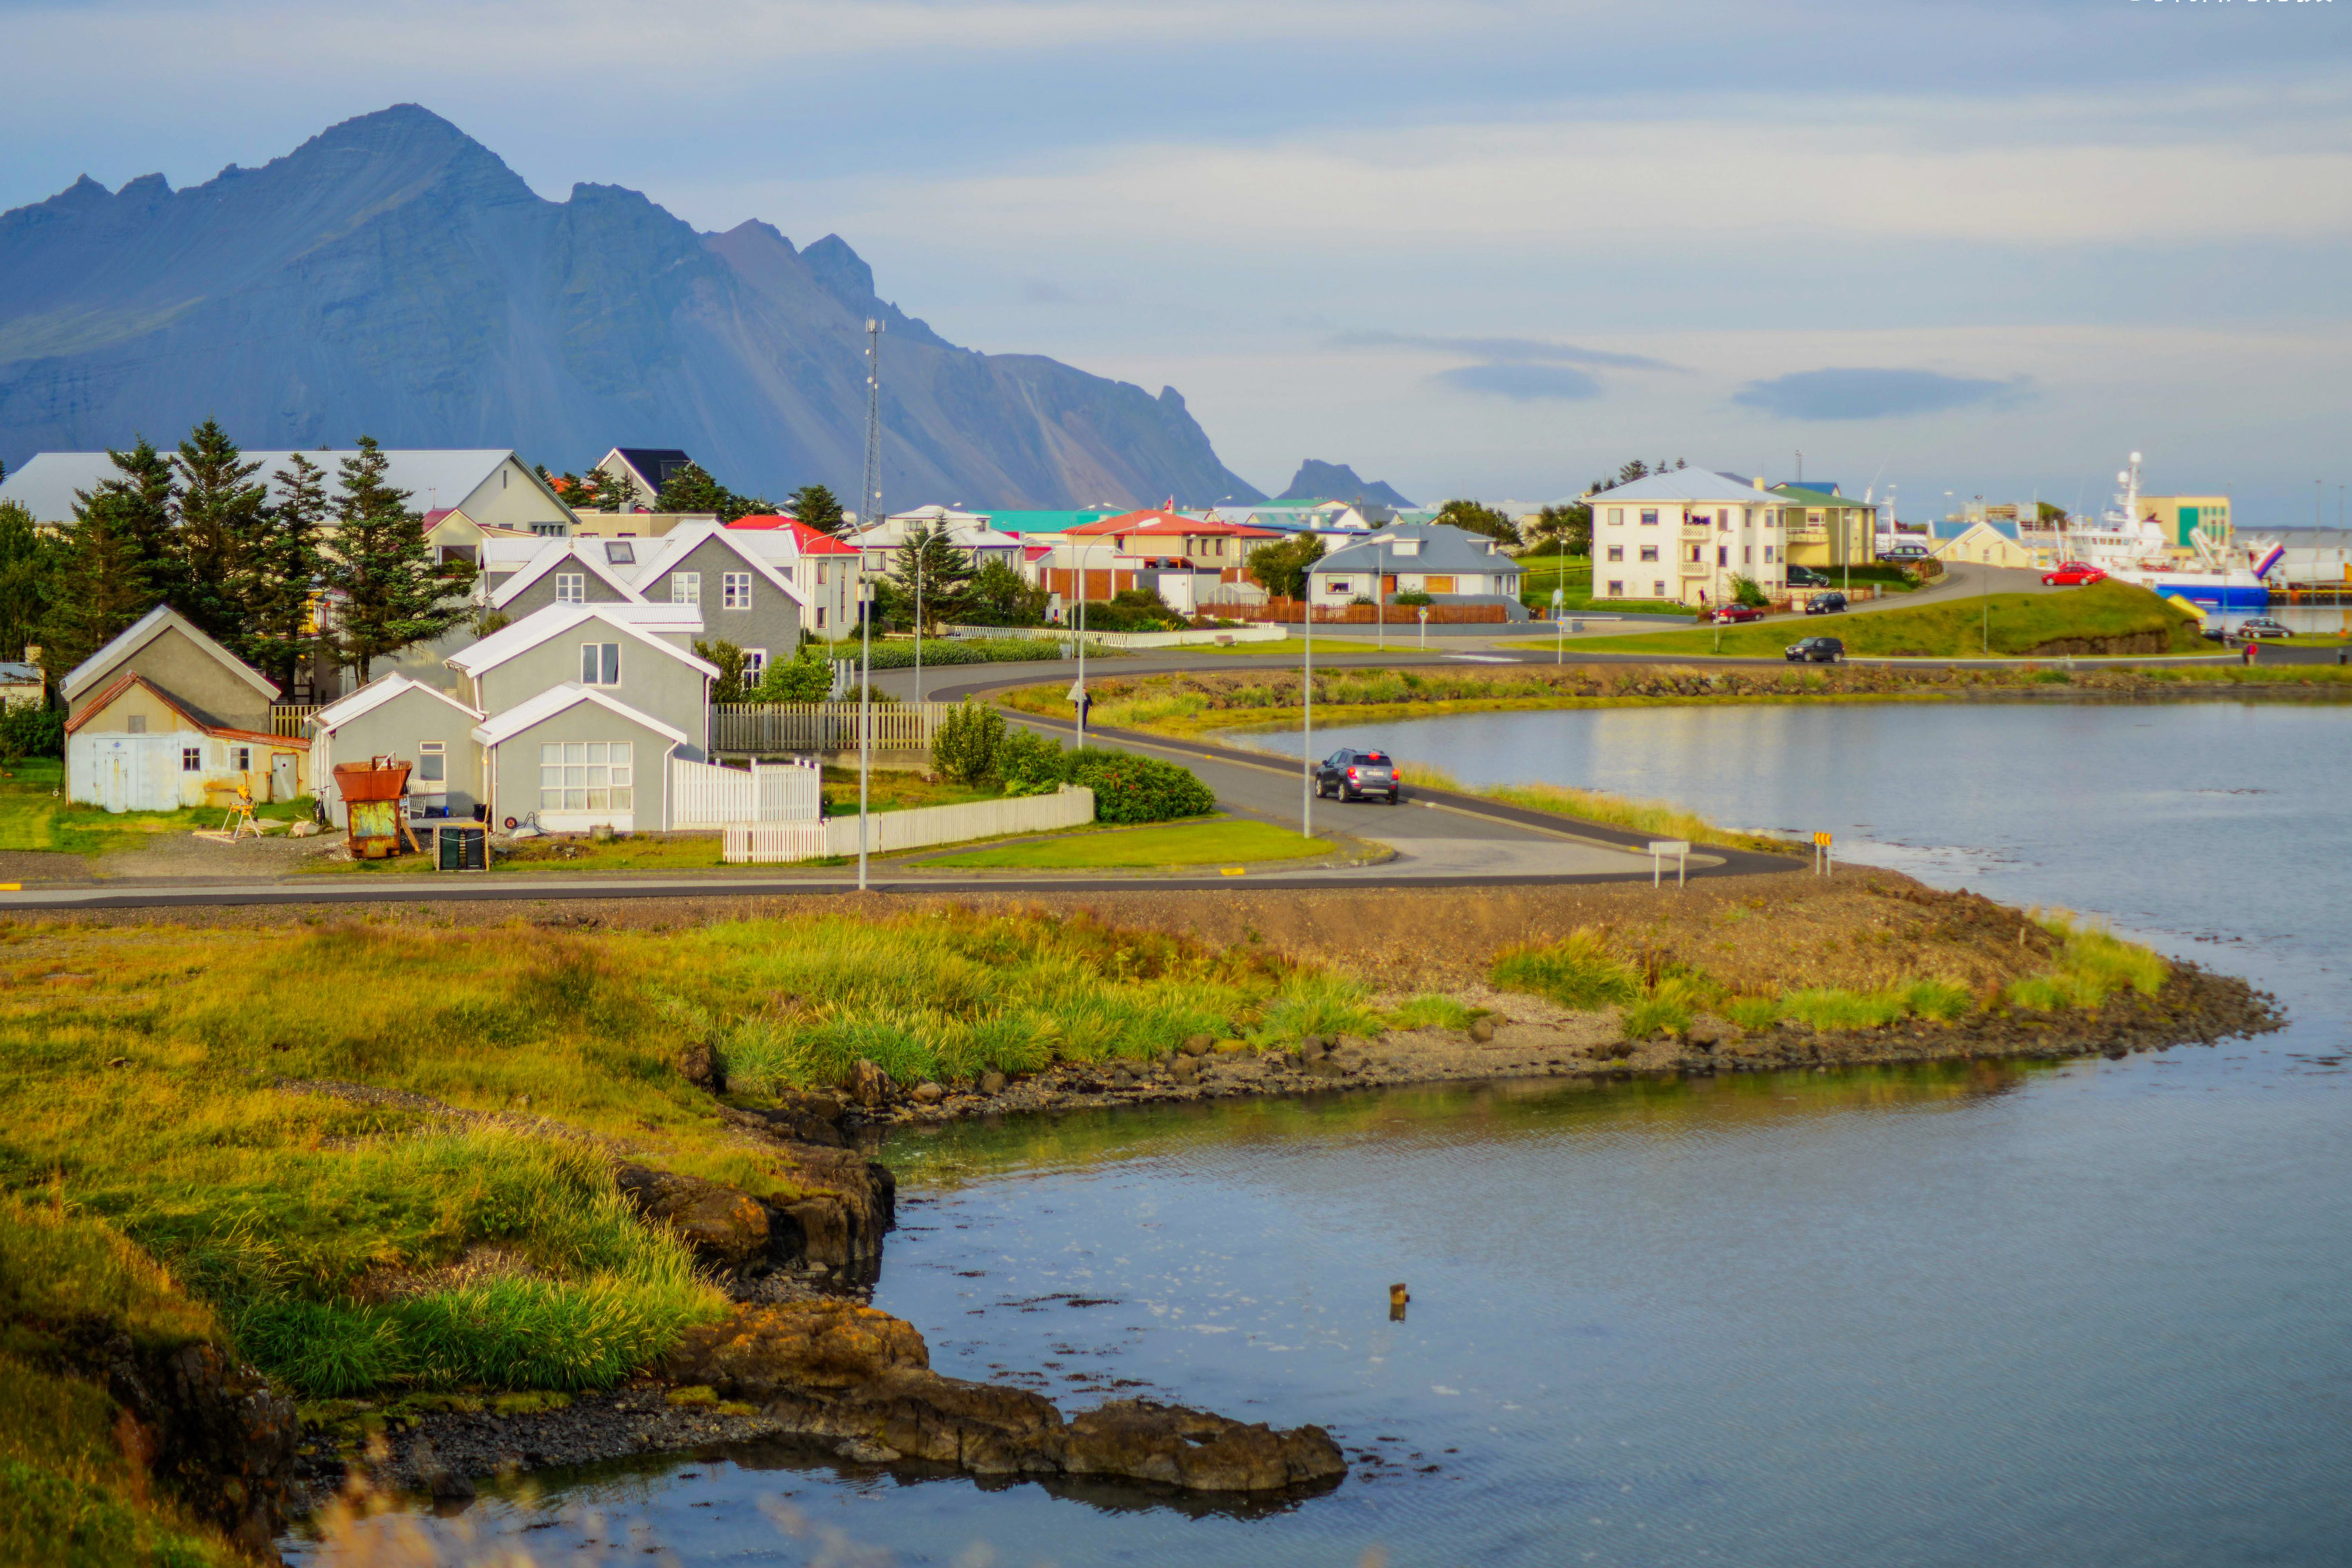 冰岛袖珍小镇,居民仅1000人,却因盛产龙虾吸引游客无数